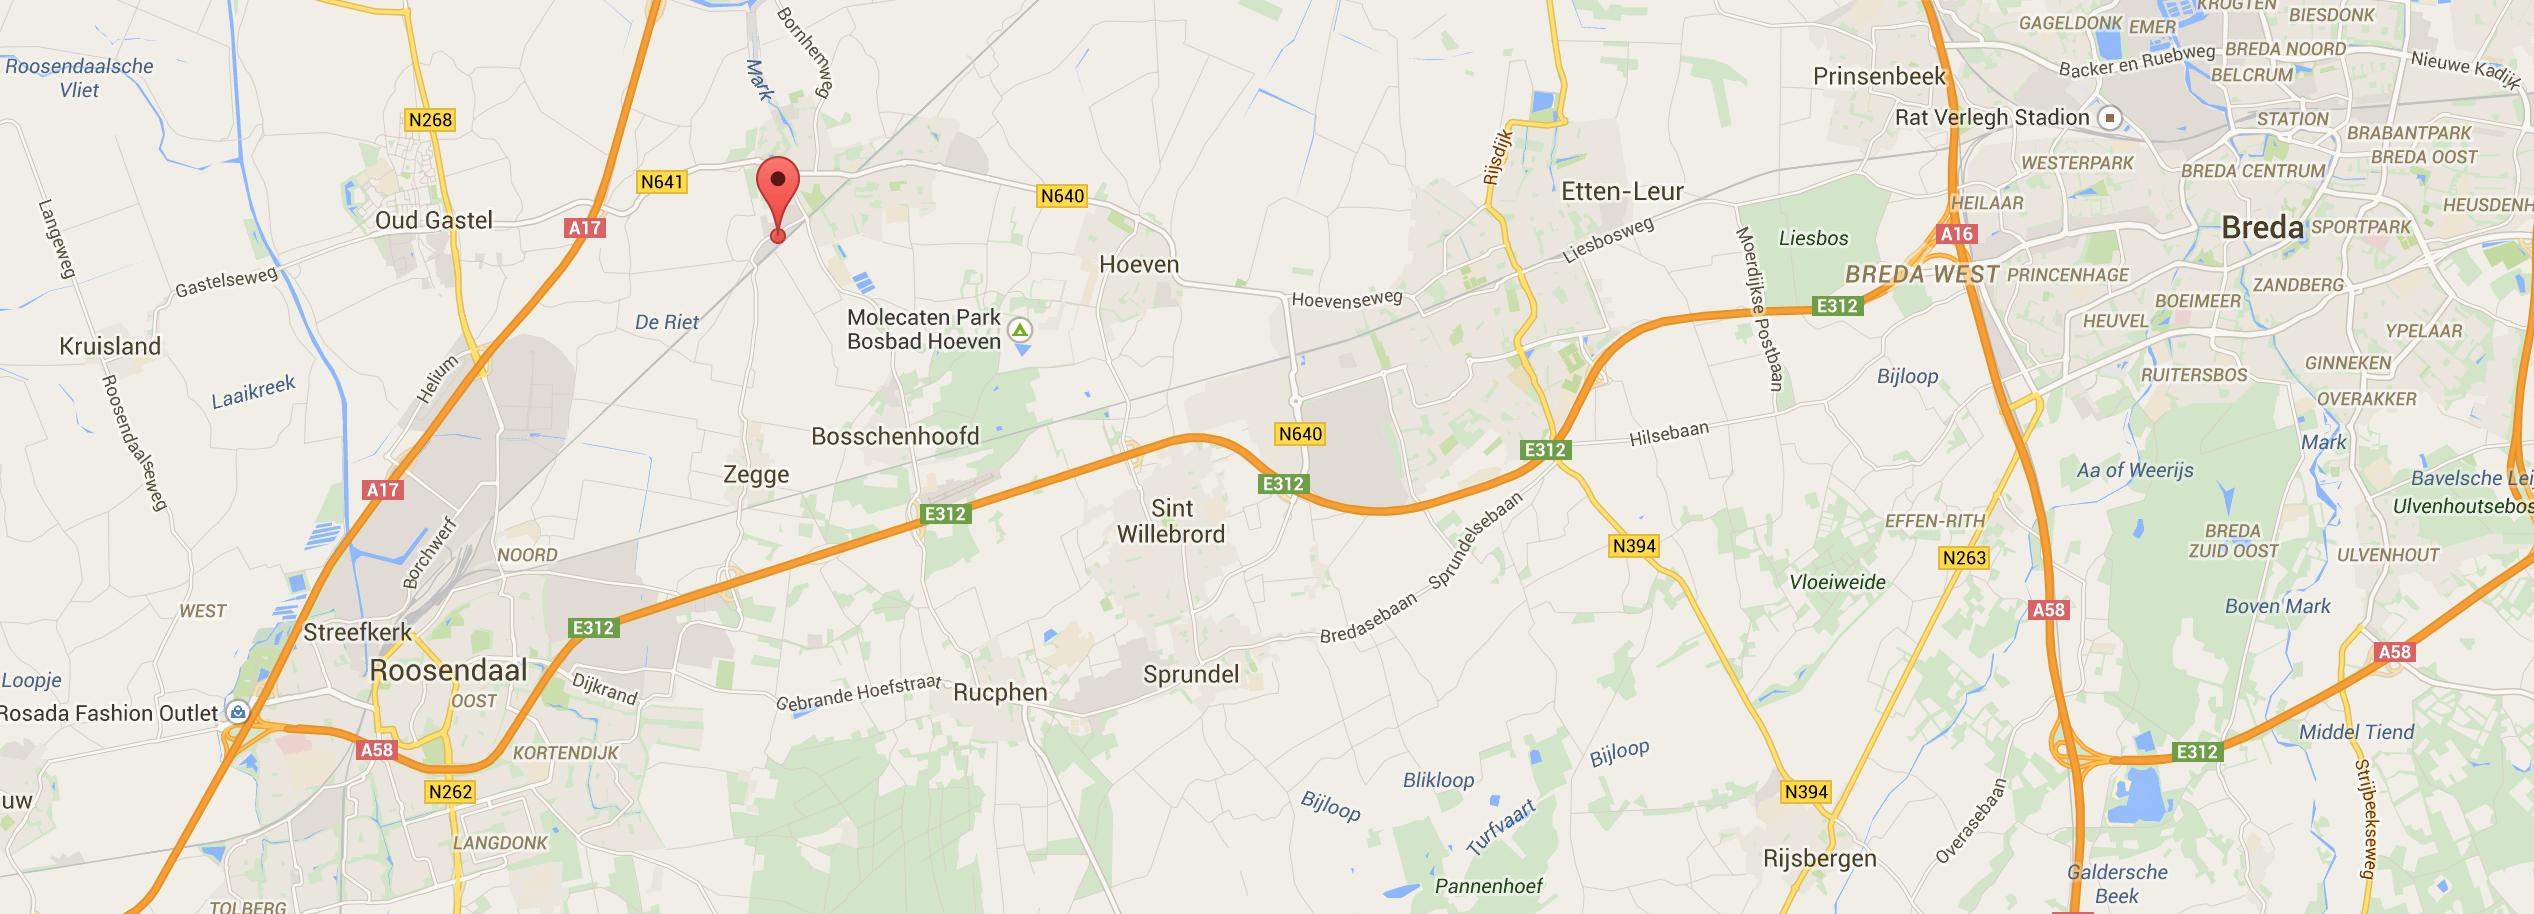 Ligging: Het bedrijfspand gelegen op het bedrijventerrein Industrieweg in Oudenbosch en wordt zodoende omringd door veel bedrijvigheid.